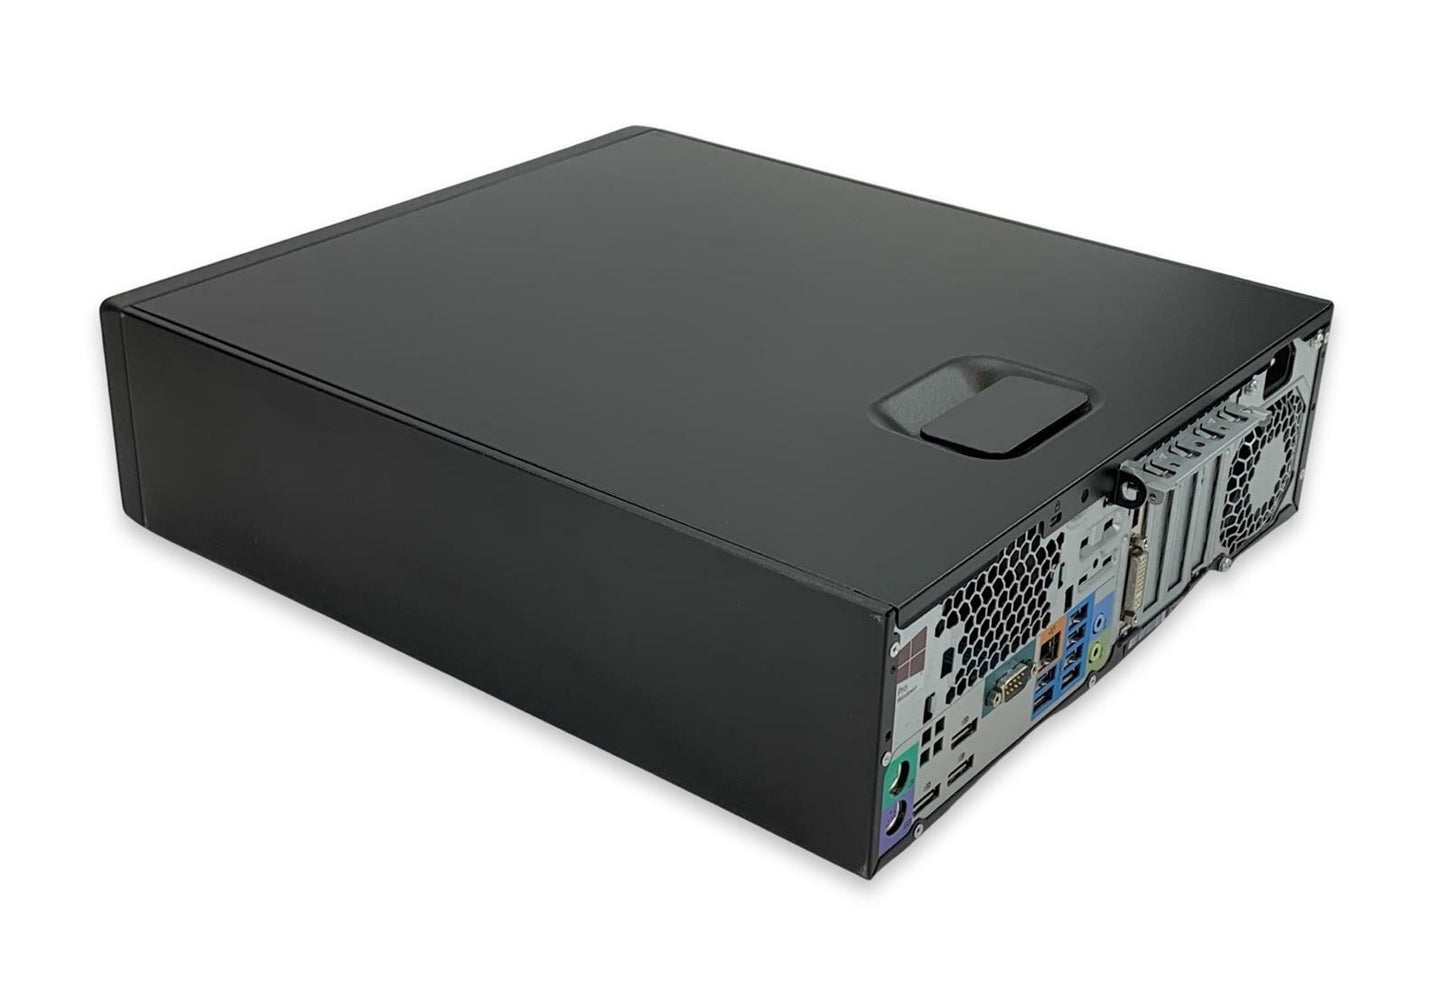 HP Z240 Workstation Quad Xeon E3-1240v5 3.50GHz 256GB SDD 1TB HDD 16GB RAM Win10